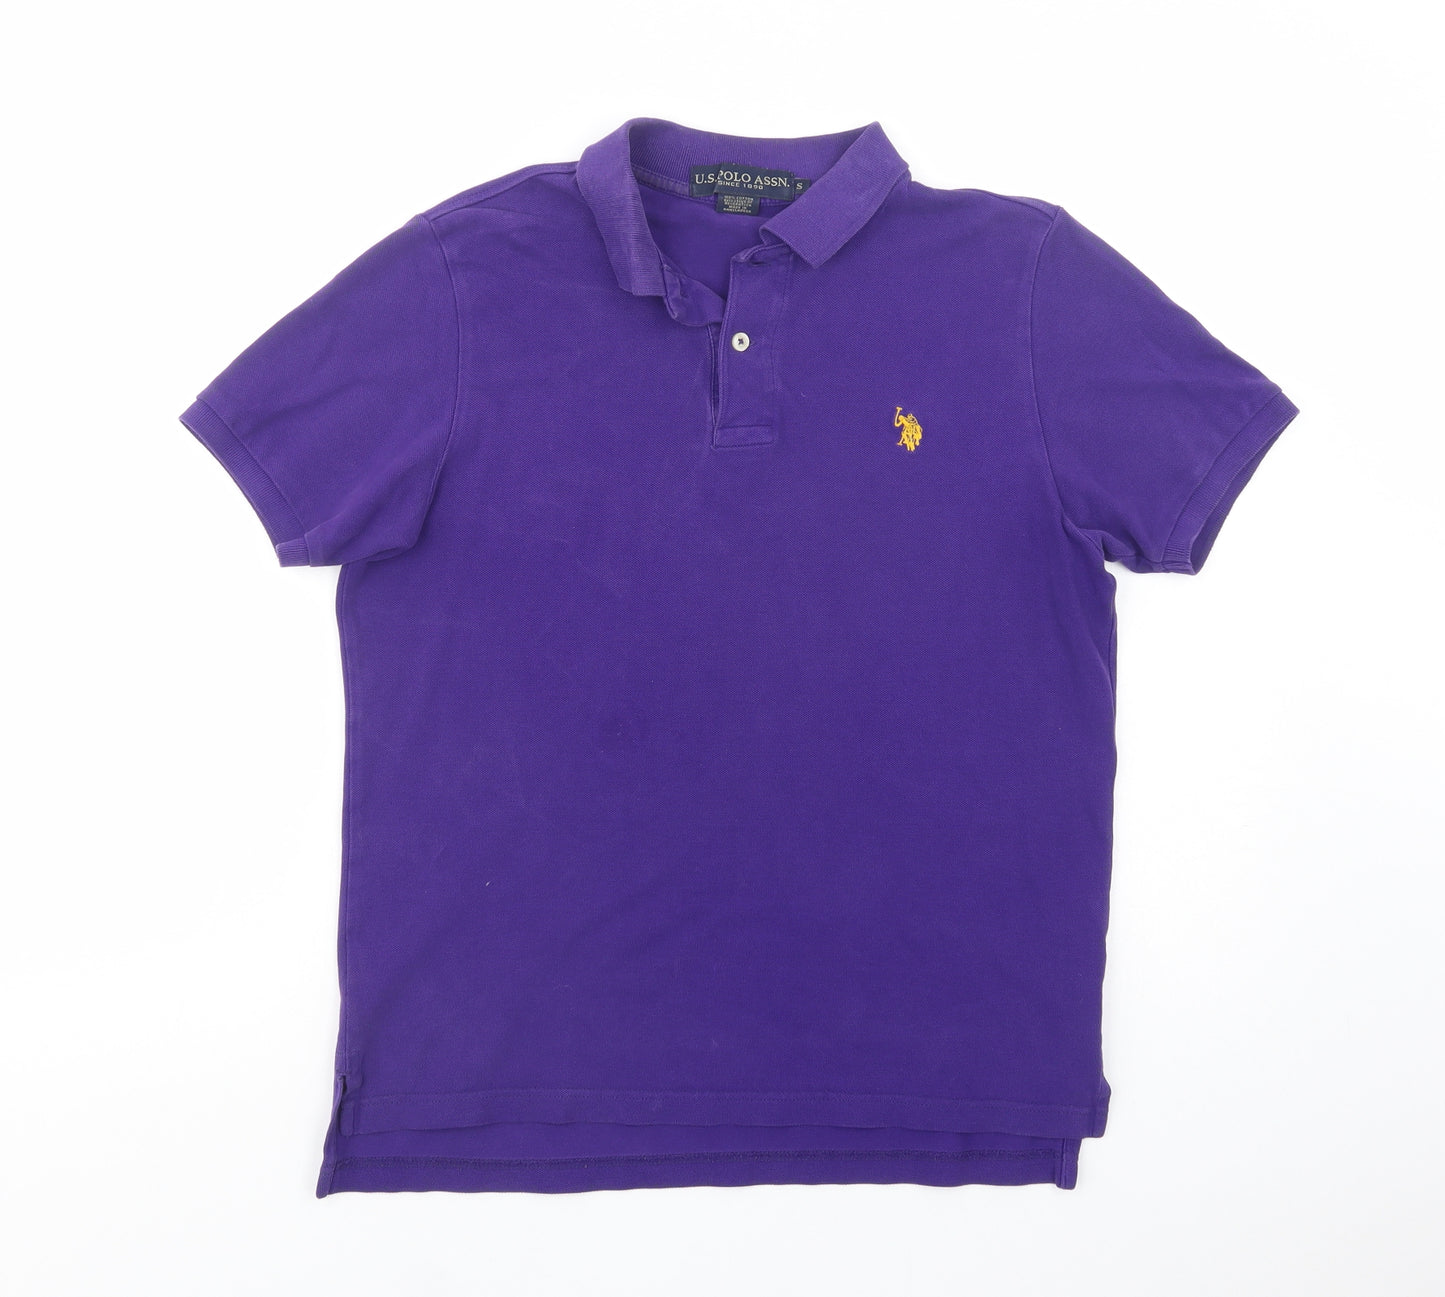 US Polo Assn. Mens Purple  Cotton  Polo Size S Collared Button